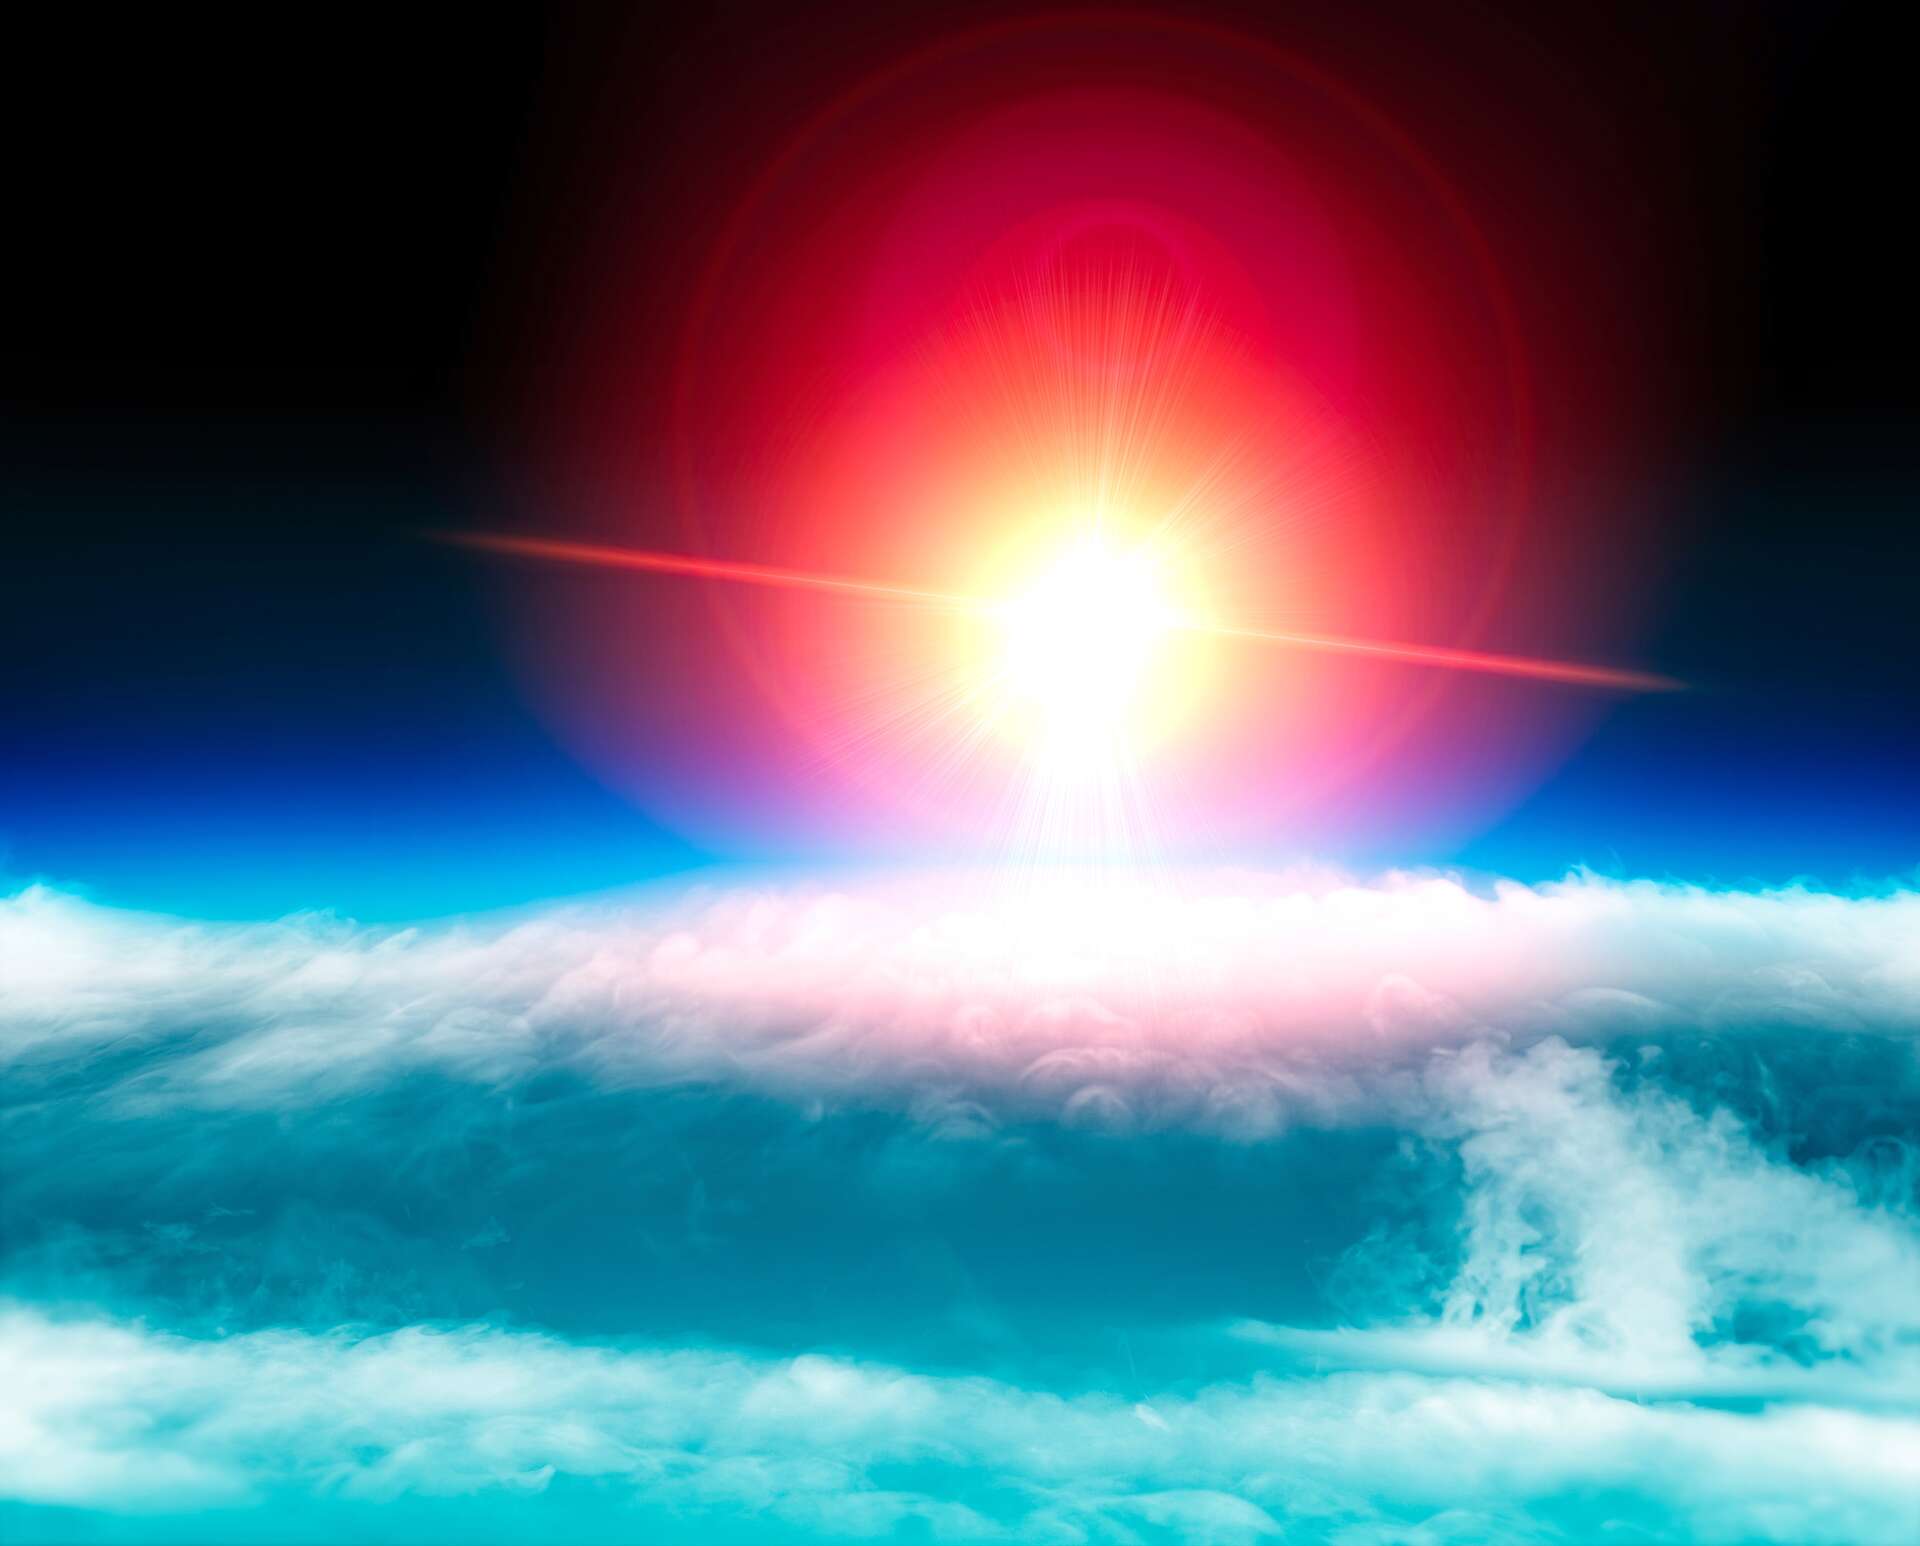 Le trou dans la couche d'ozone ne serait finalement pas en voie de guérison selon un nouveau rapport.